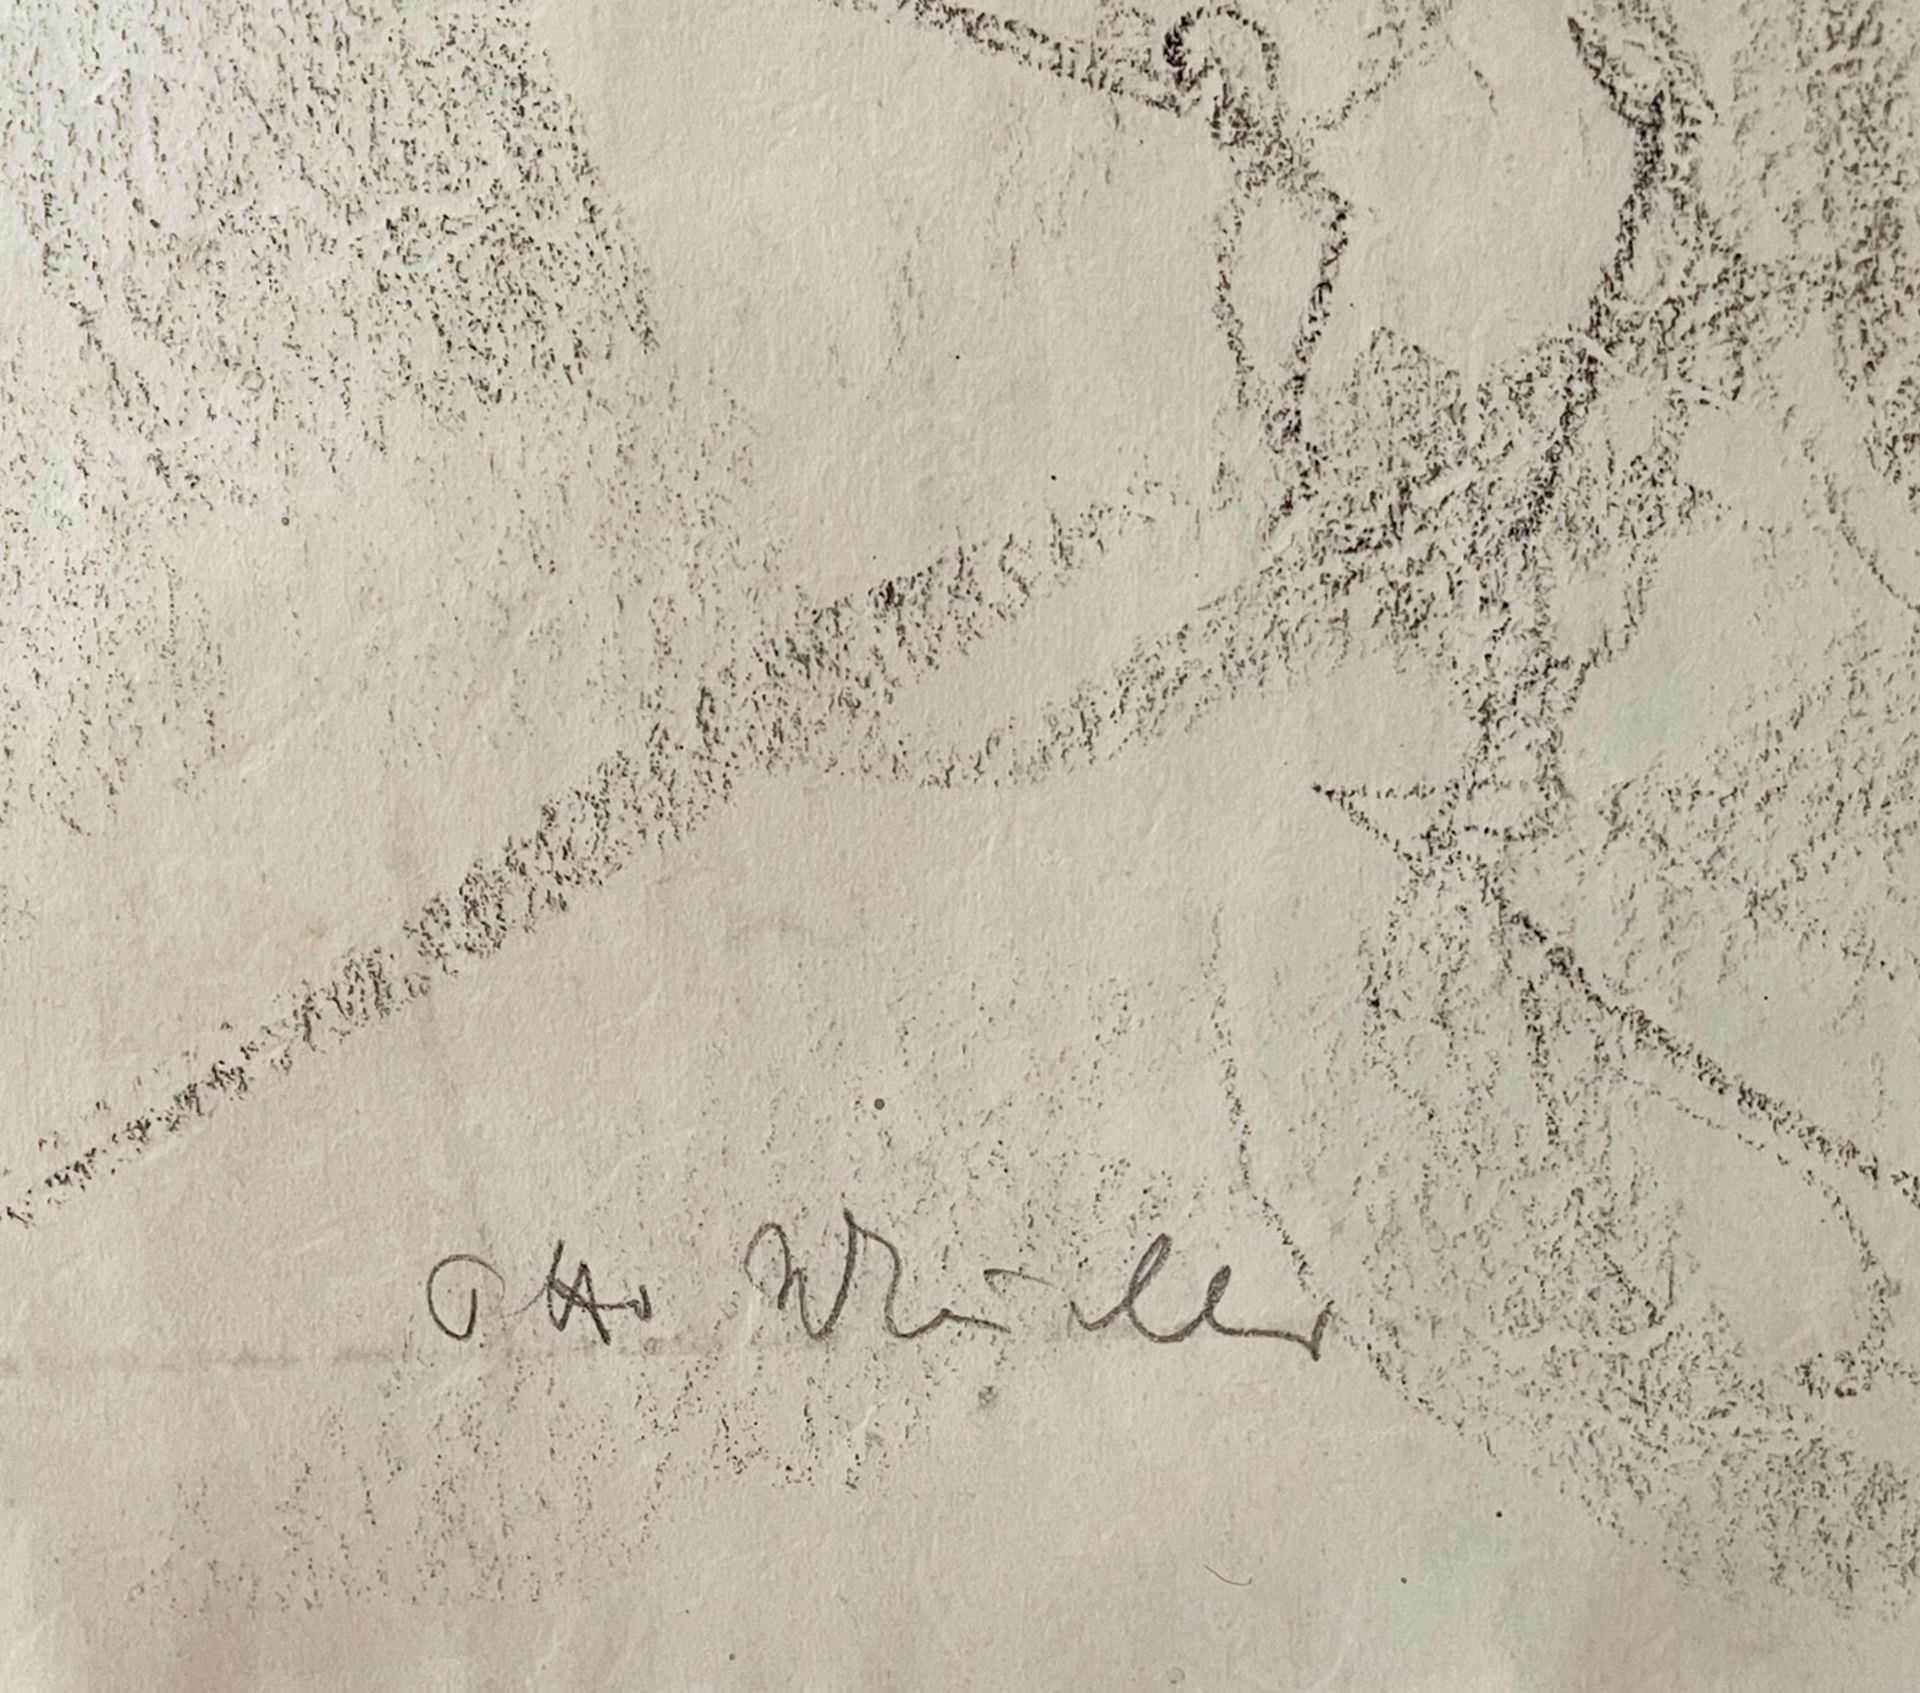 Otto Mueller, 1874 Liebau – 1930 Obernigk/Breslau - Bild 4 aus 11